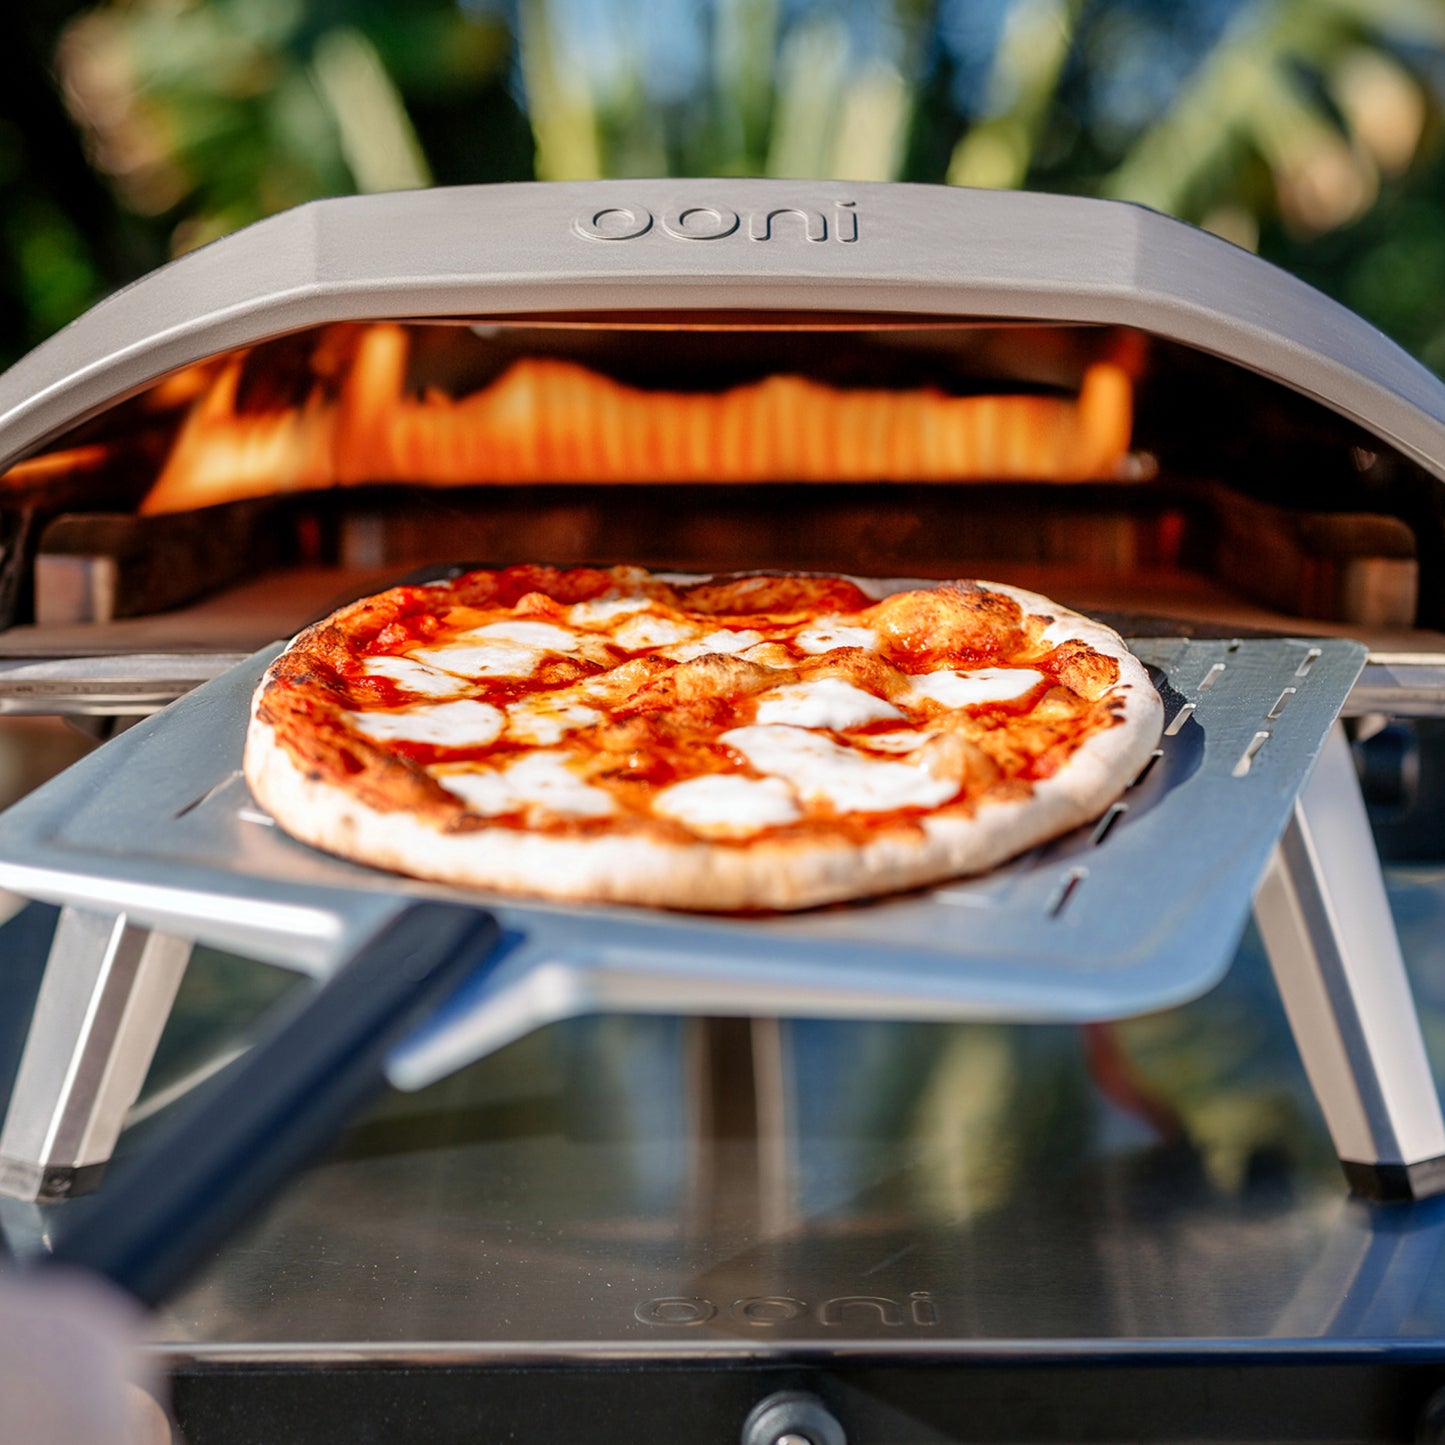 Ooni Koda 16 Gas-Powered Pizza Oven